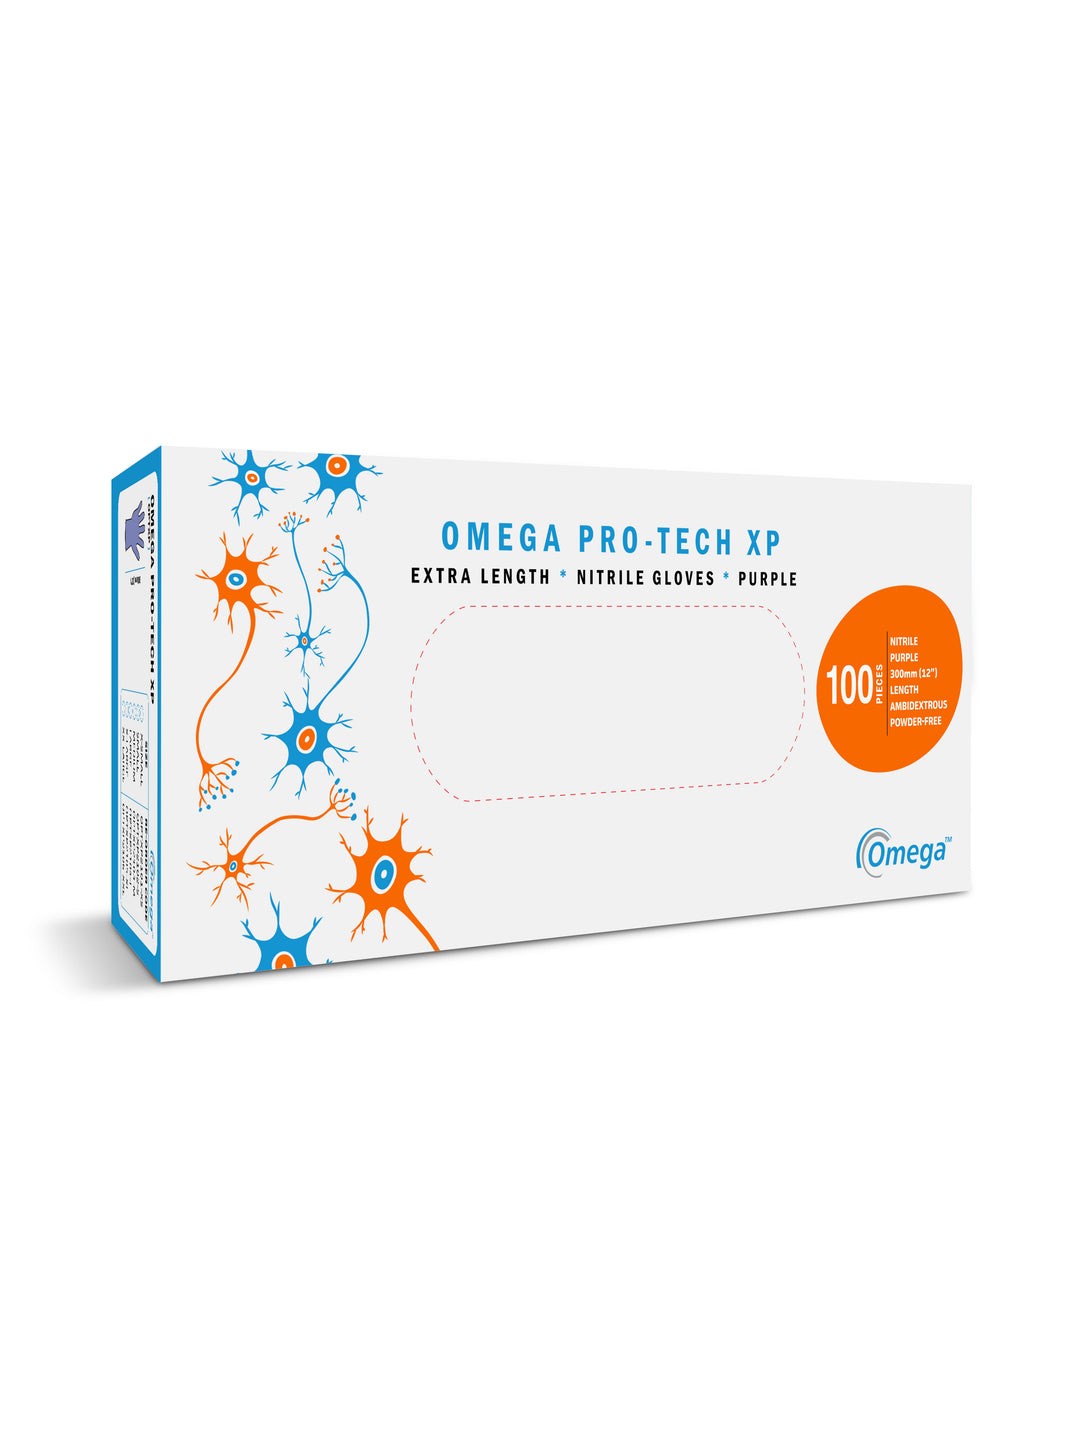 A White, Blue and Orange Box of BioClean Omega Pro-tech XP Non Sterile Nitrile Gloves